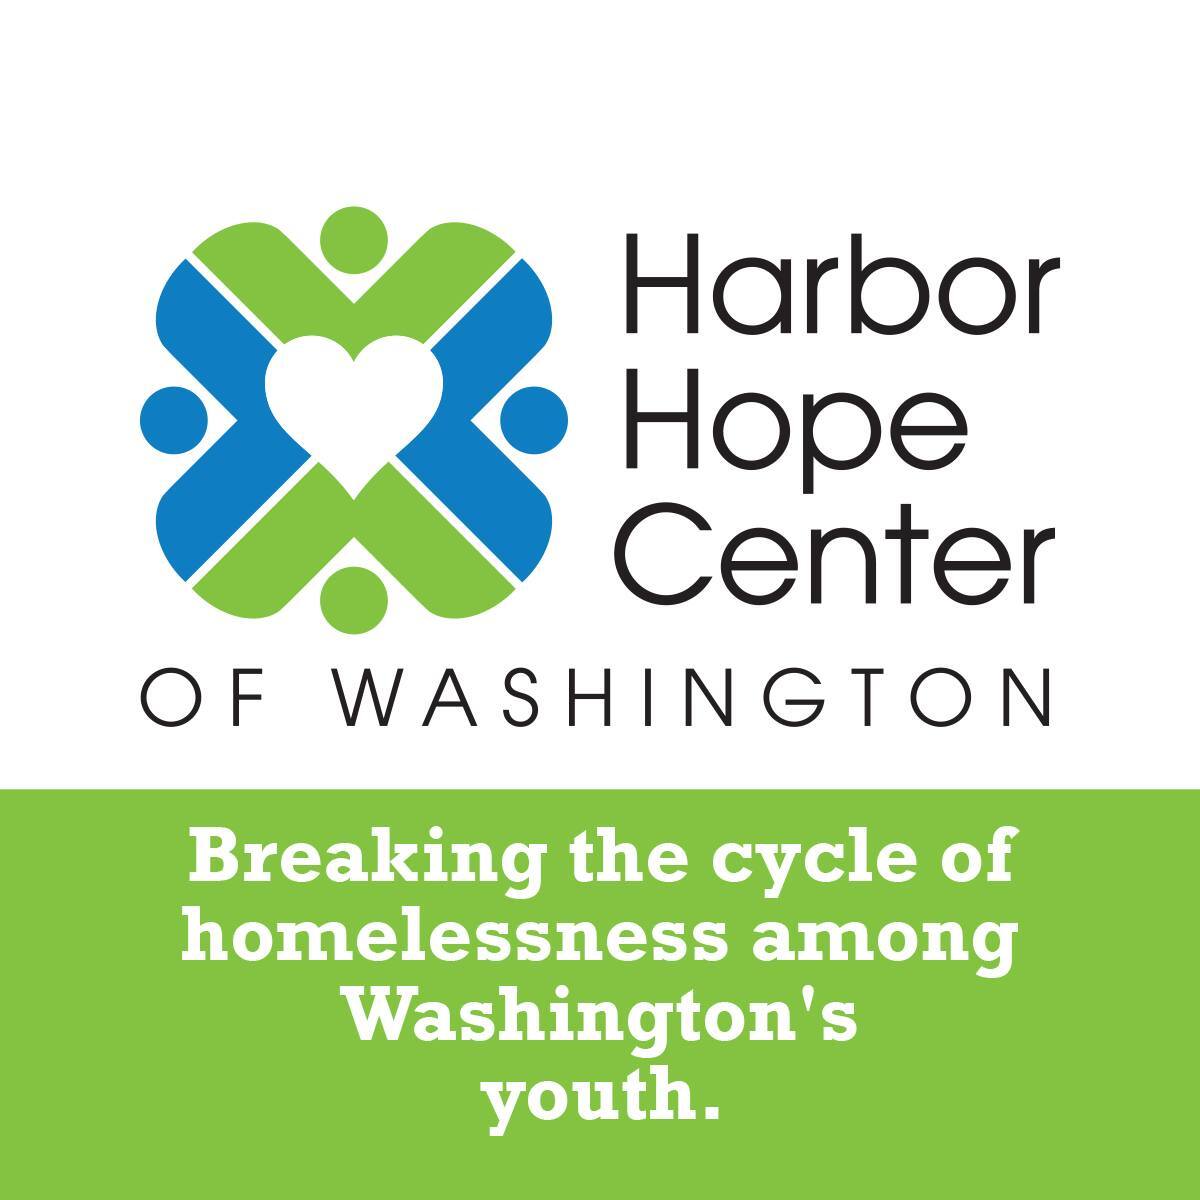 Harbor Hope Center